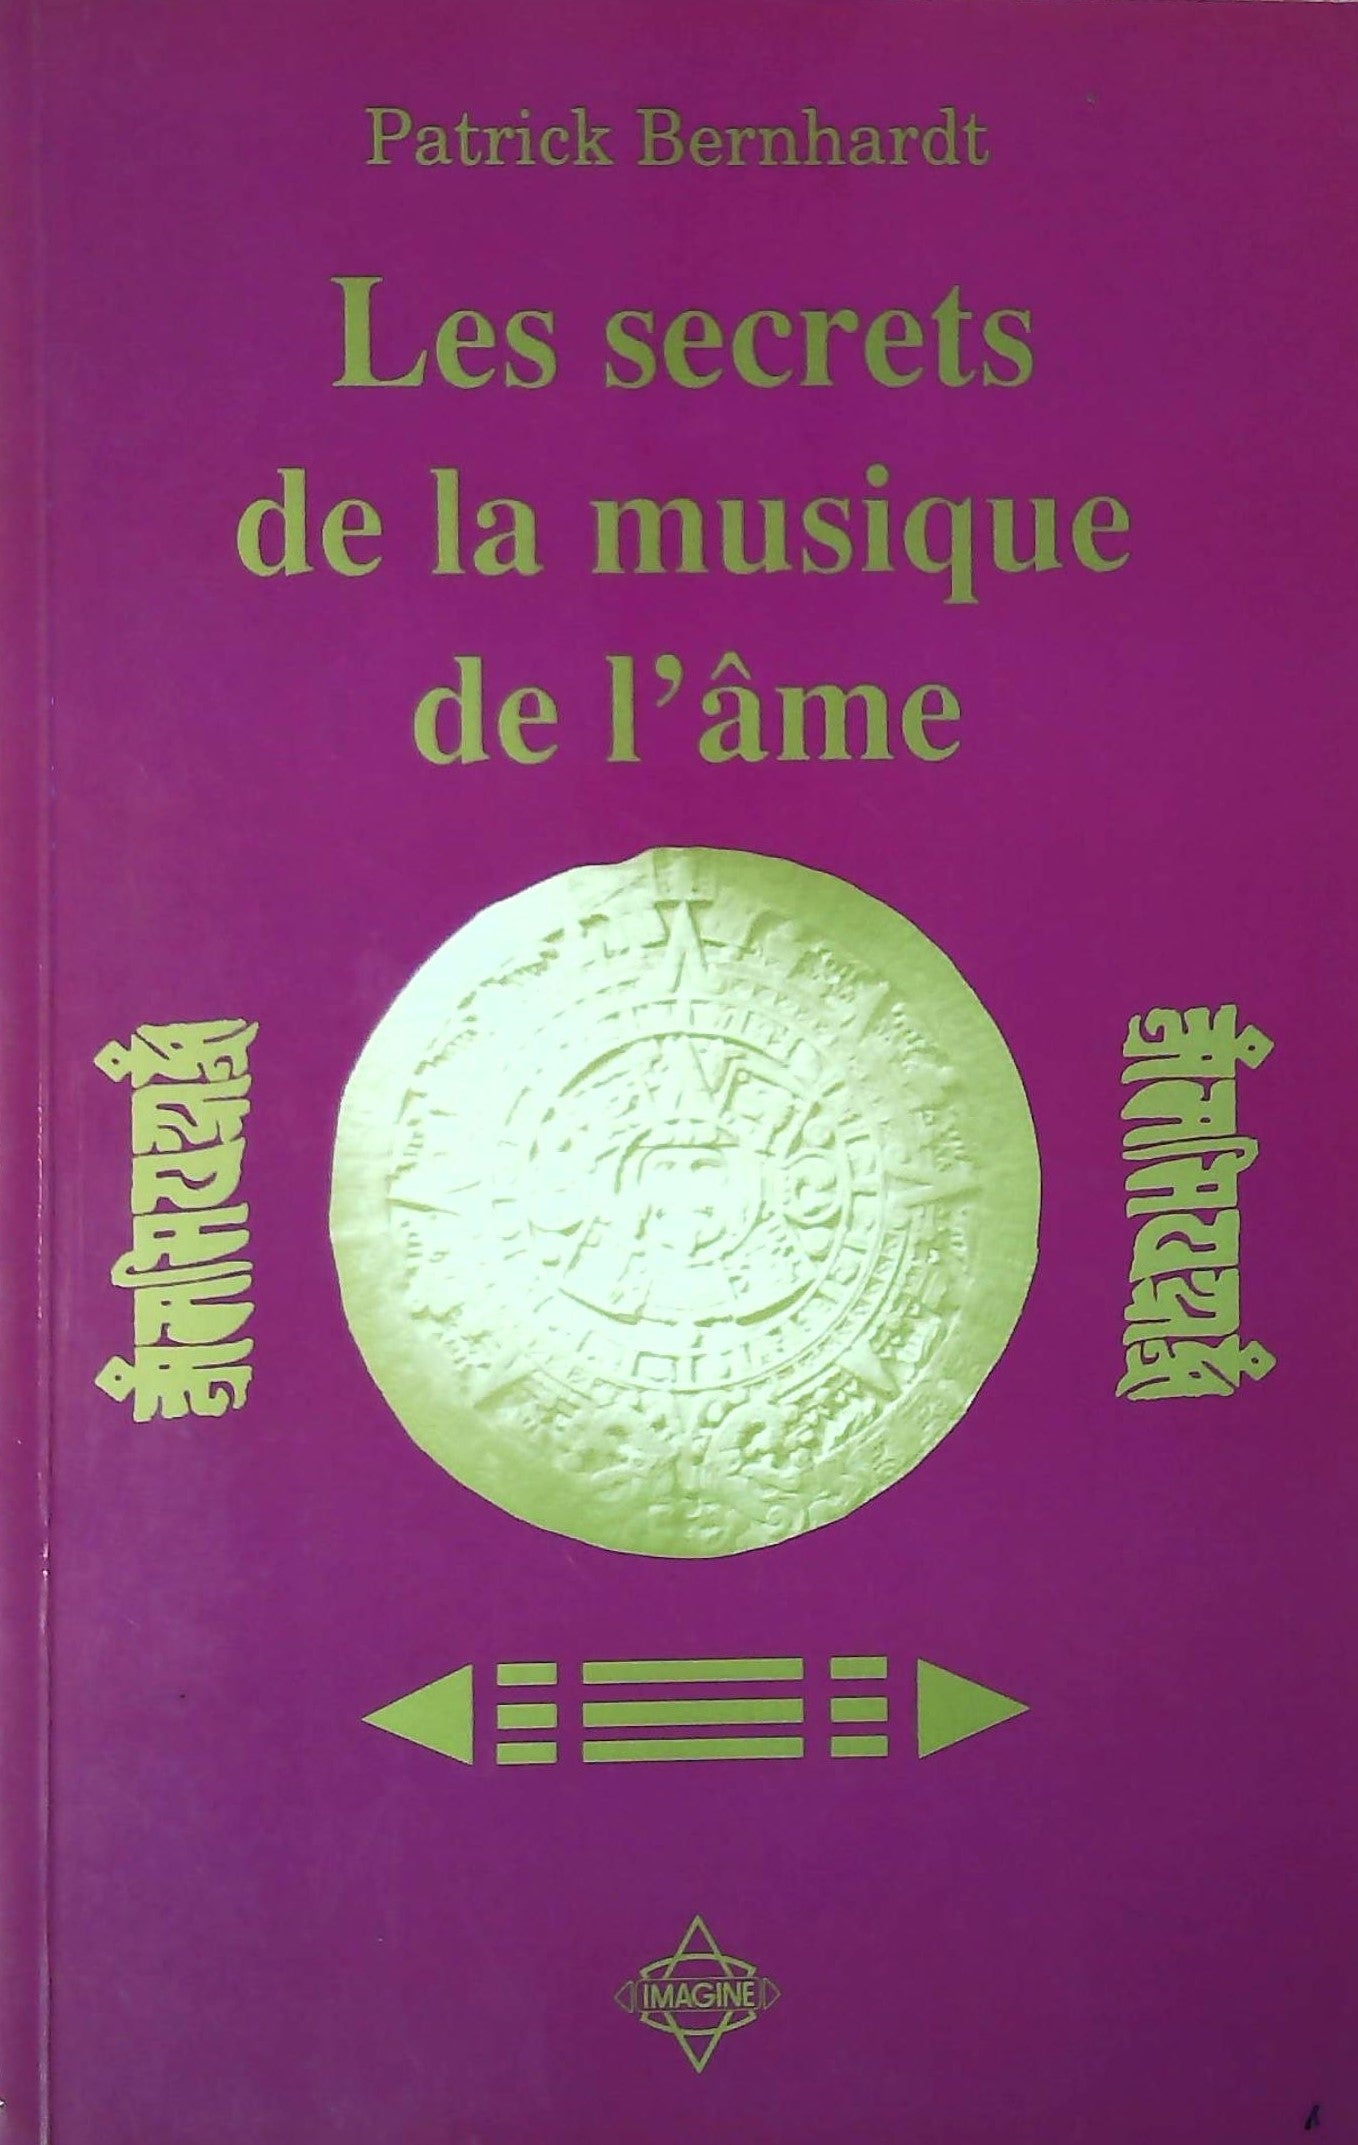 Livre ISBN 2980196606 Les secrets de la musique de l'âme (Patrick Bernhardt)